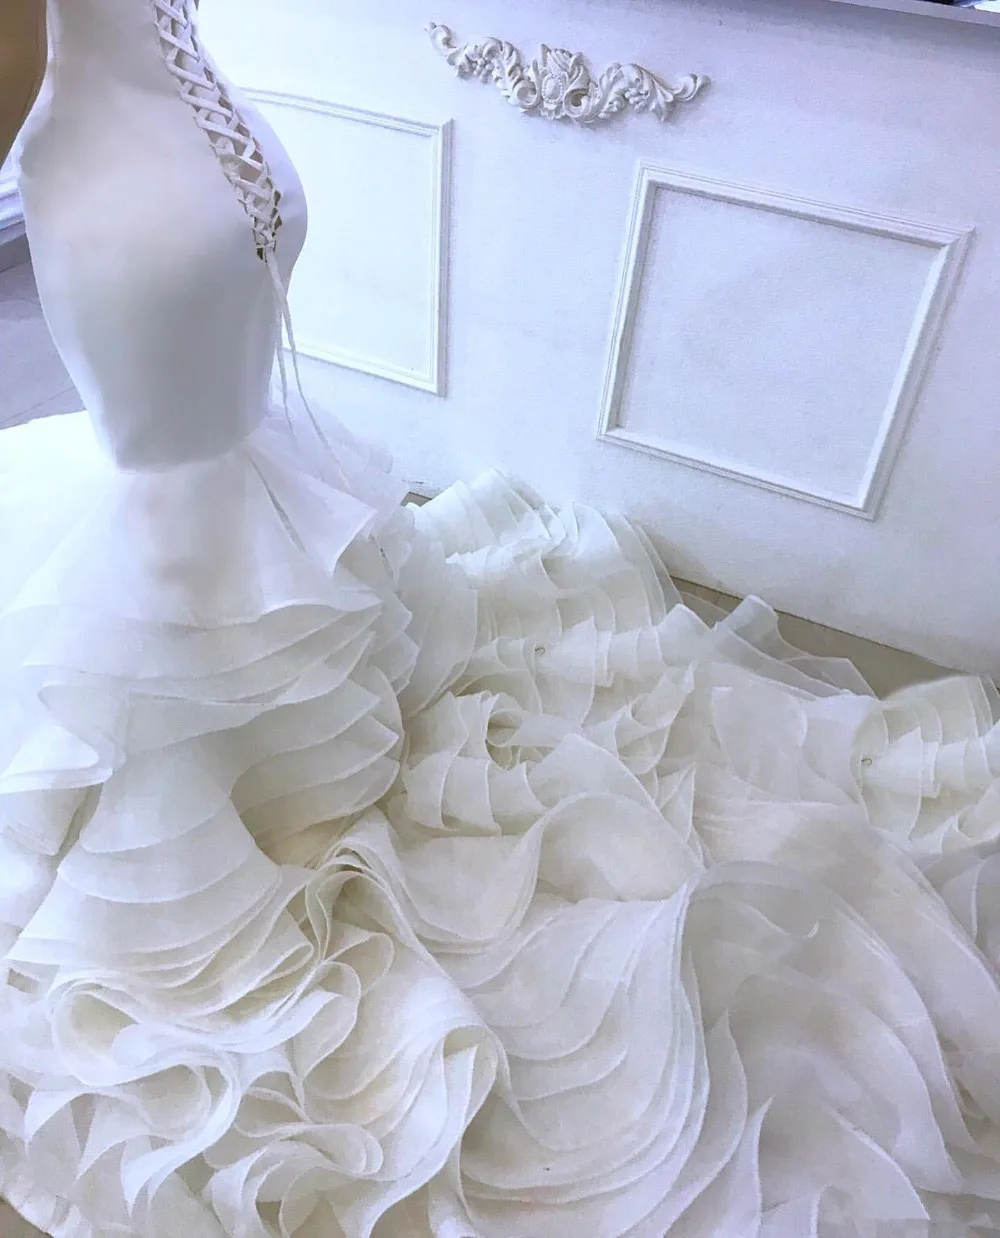 Арабский сексуальный русалка Роскошные свадебные платья милый Кристалл сатиновое свадебное платье органза ярусы свадебные платья